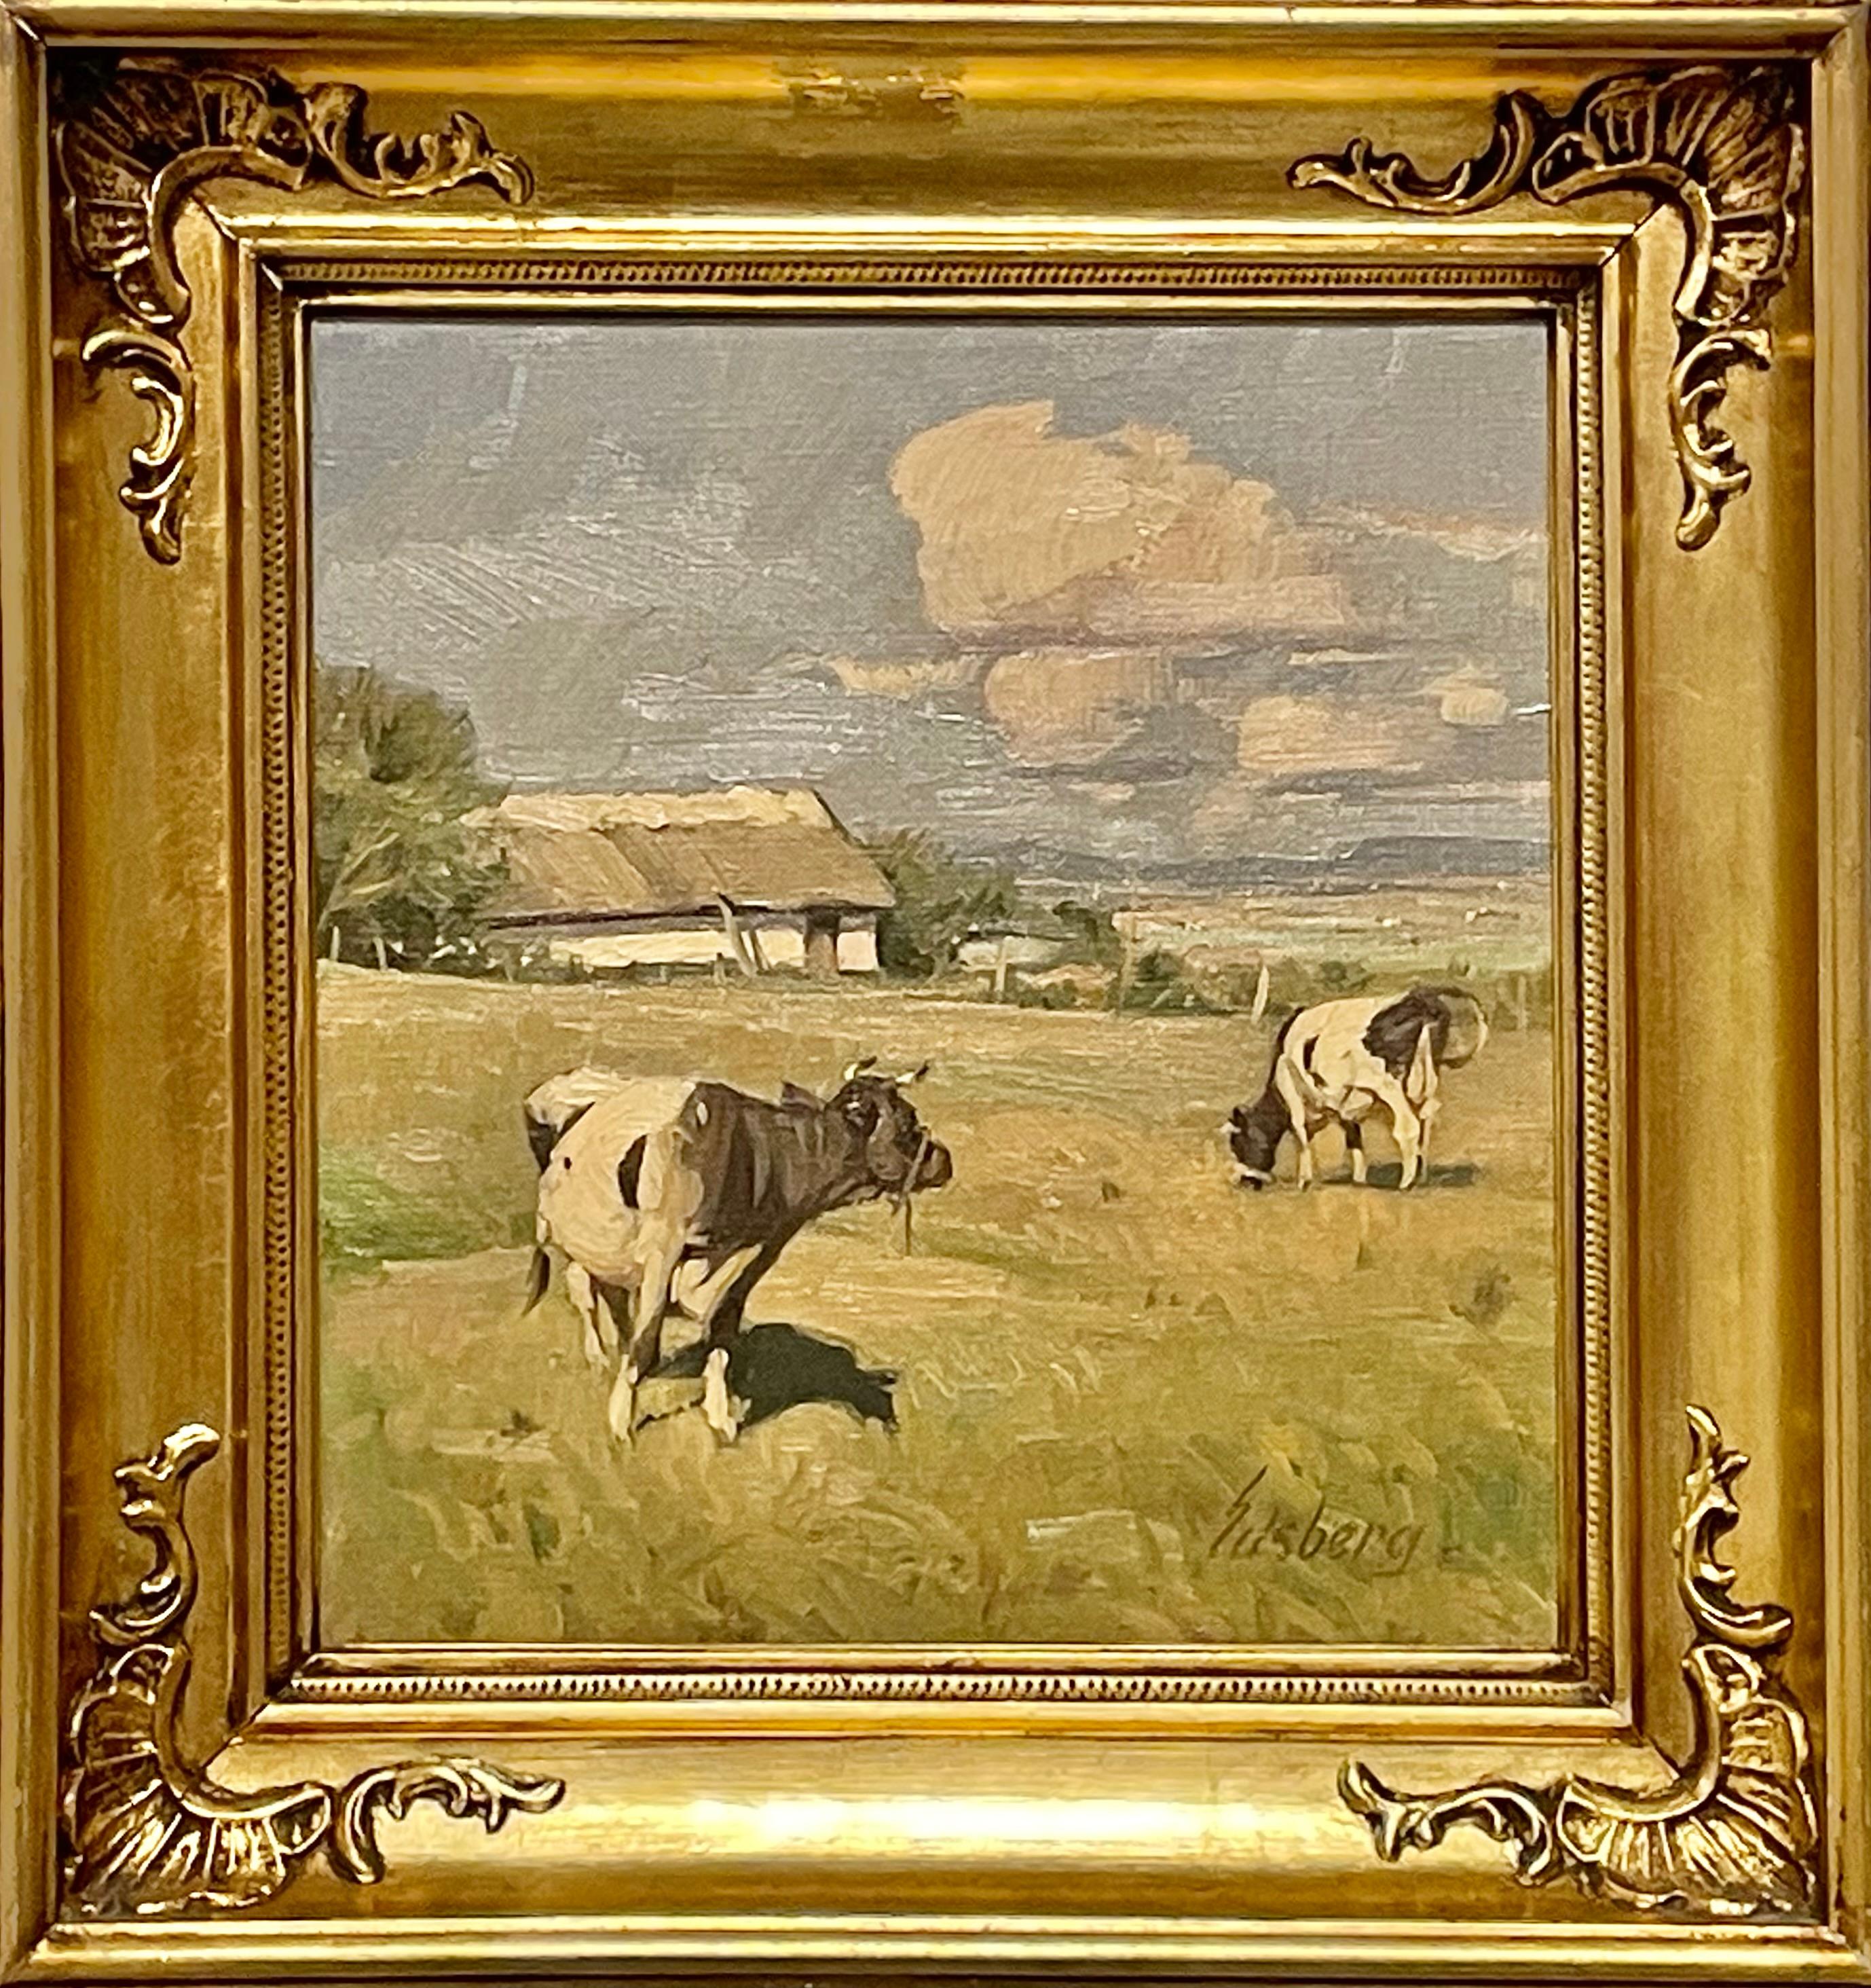 Dies ist ein Öl auf Leinwand Landschaftsgemälde von Knud Edsberg (1911-2003) aus Dänemark, das auf die 1950er Jahre geschätzt wird.
Das Motiv sind Kühe auf einem Feld.

Das Gemälde ist in der rechten unteren Ecke signiert und in einem goldfarbenen